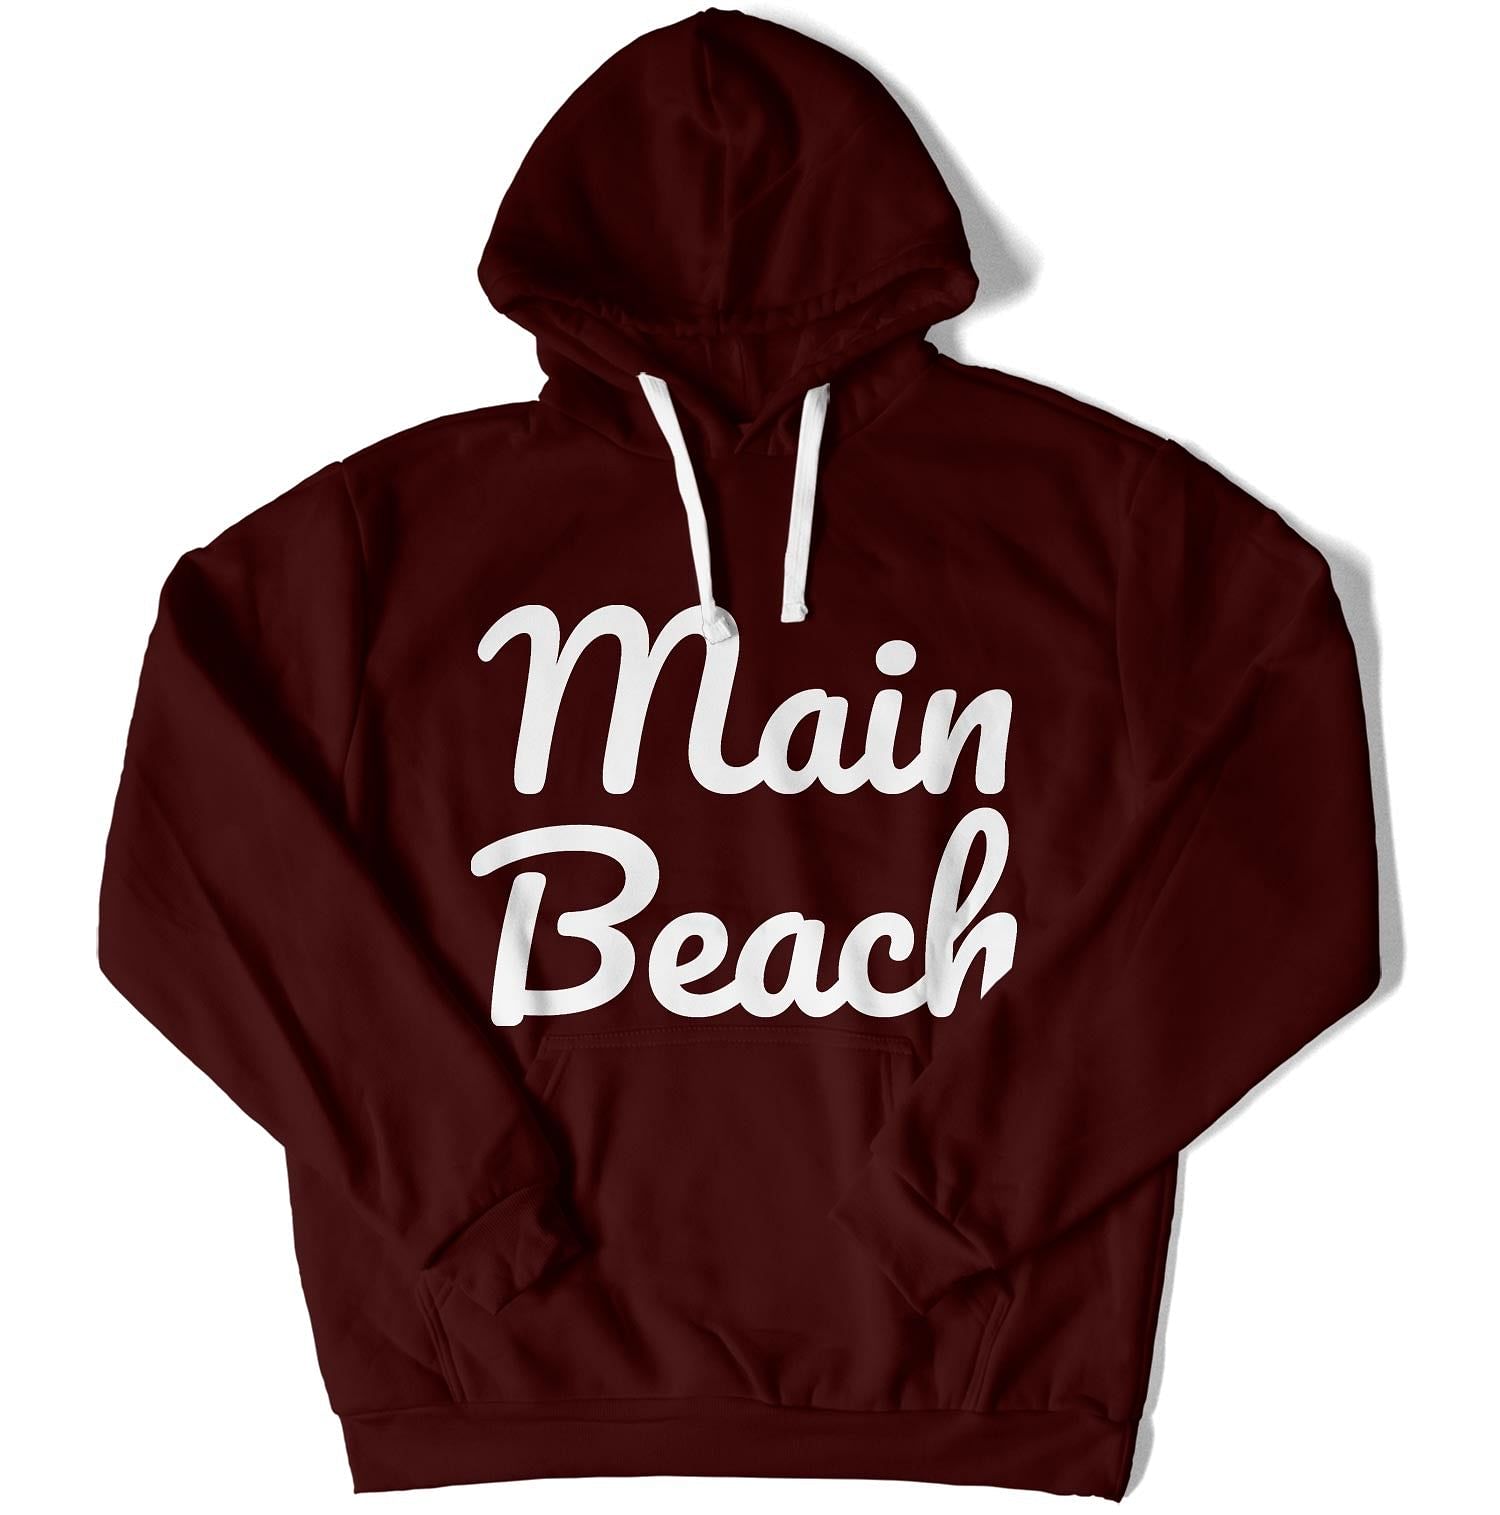 Main Beach Unisex Hoodie-East Coast AF Apparel